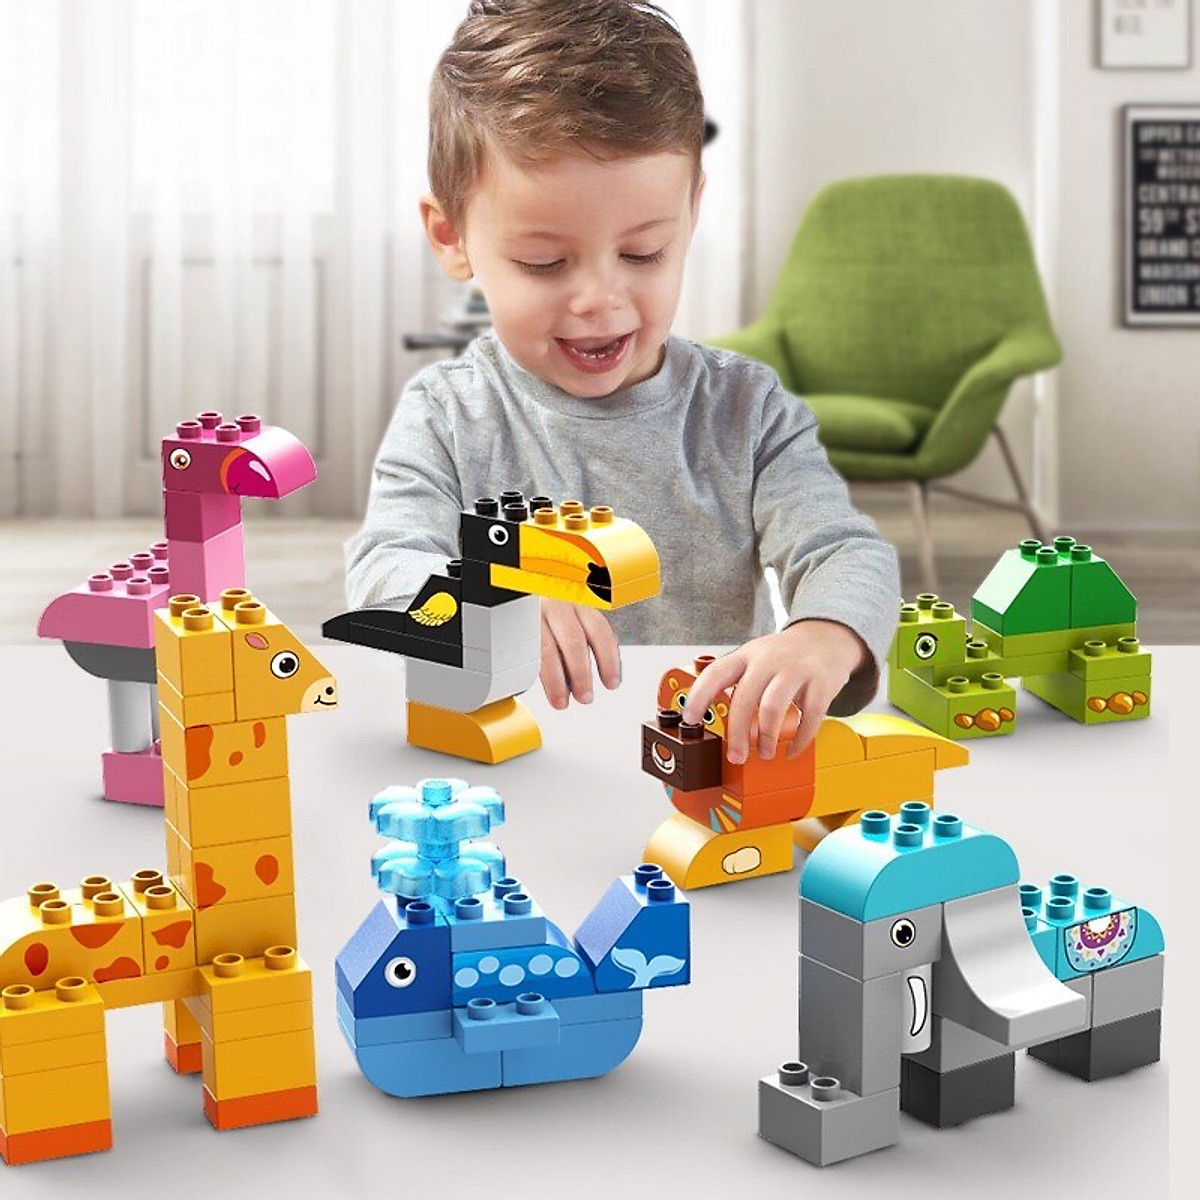 Nên lựa chọn đồ chơi phù hợp với lứa tuổi để kích thích khả năng khám phá ở trẻ